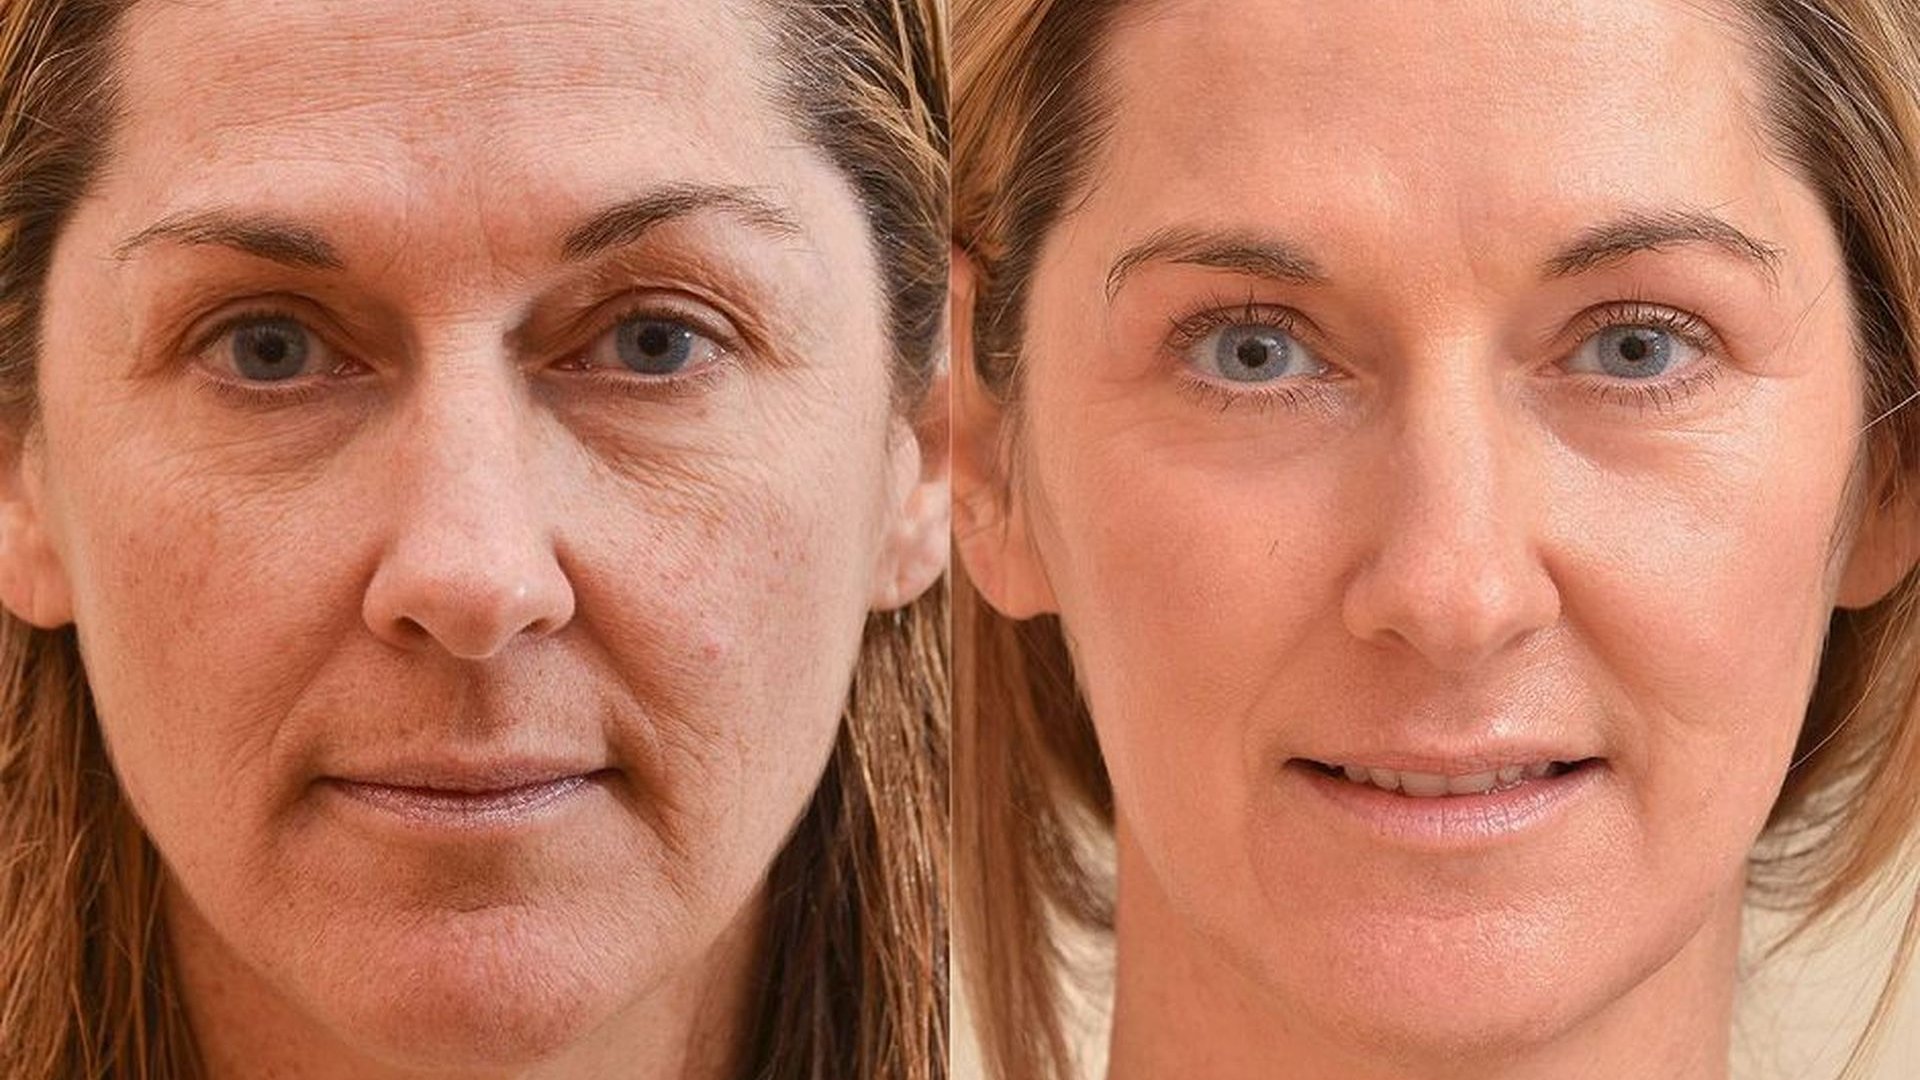 Wrinkling face. Омоложение лица до и после. Морщины до после. Лицо до после. Поазмо лифтинг до и после.